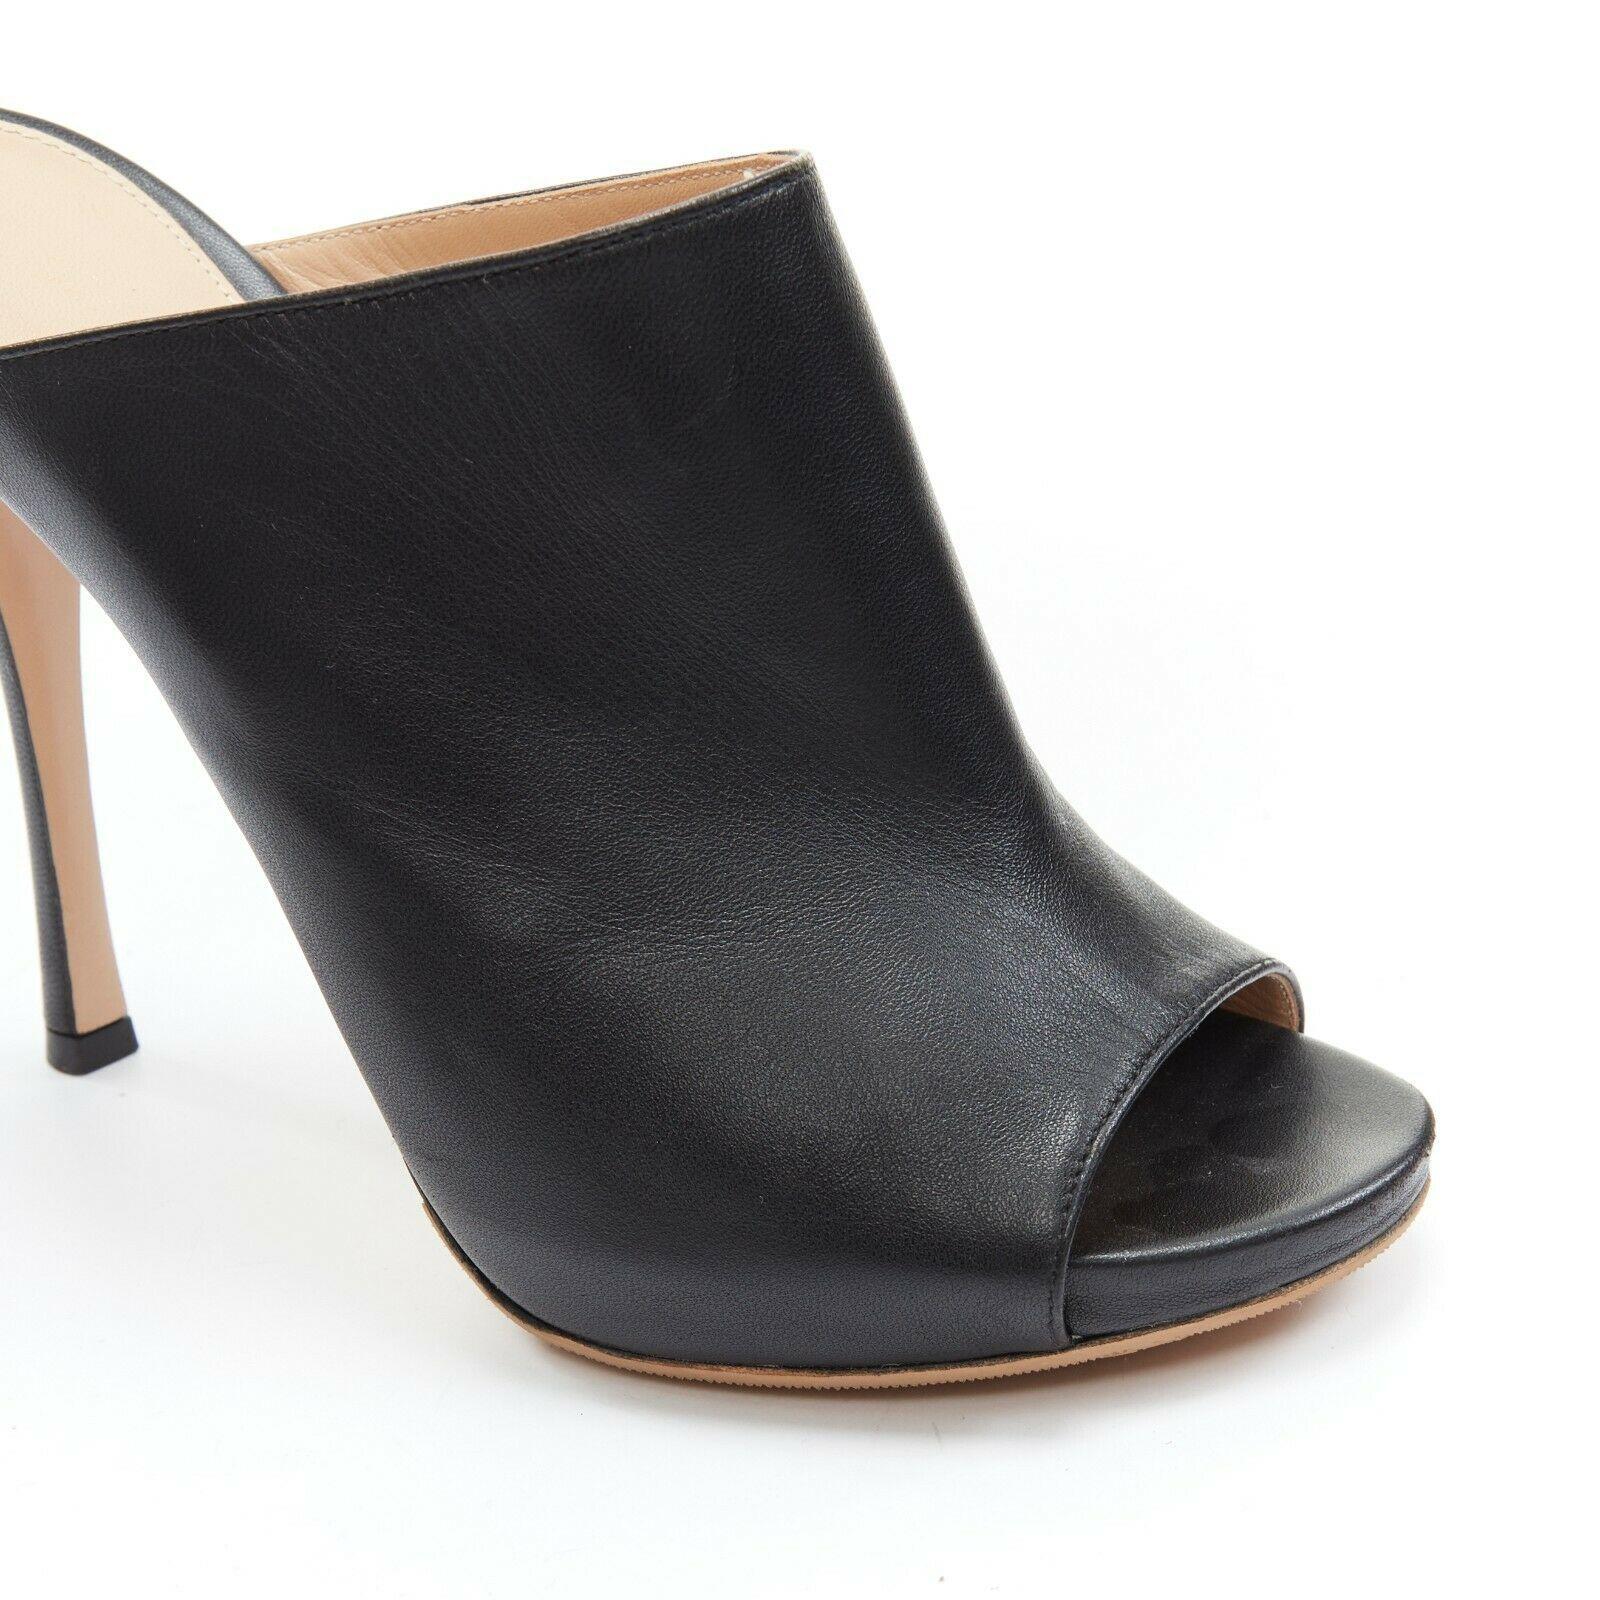 Women's GIANVITO ROSSI black leather open toe high heel slip on mule EU37